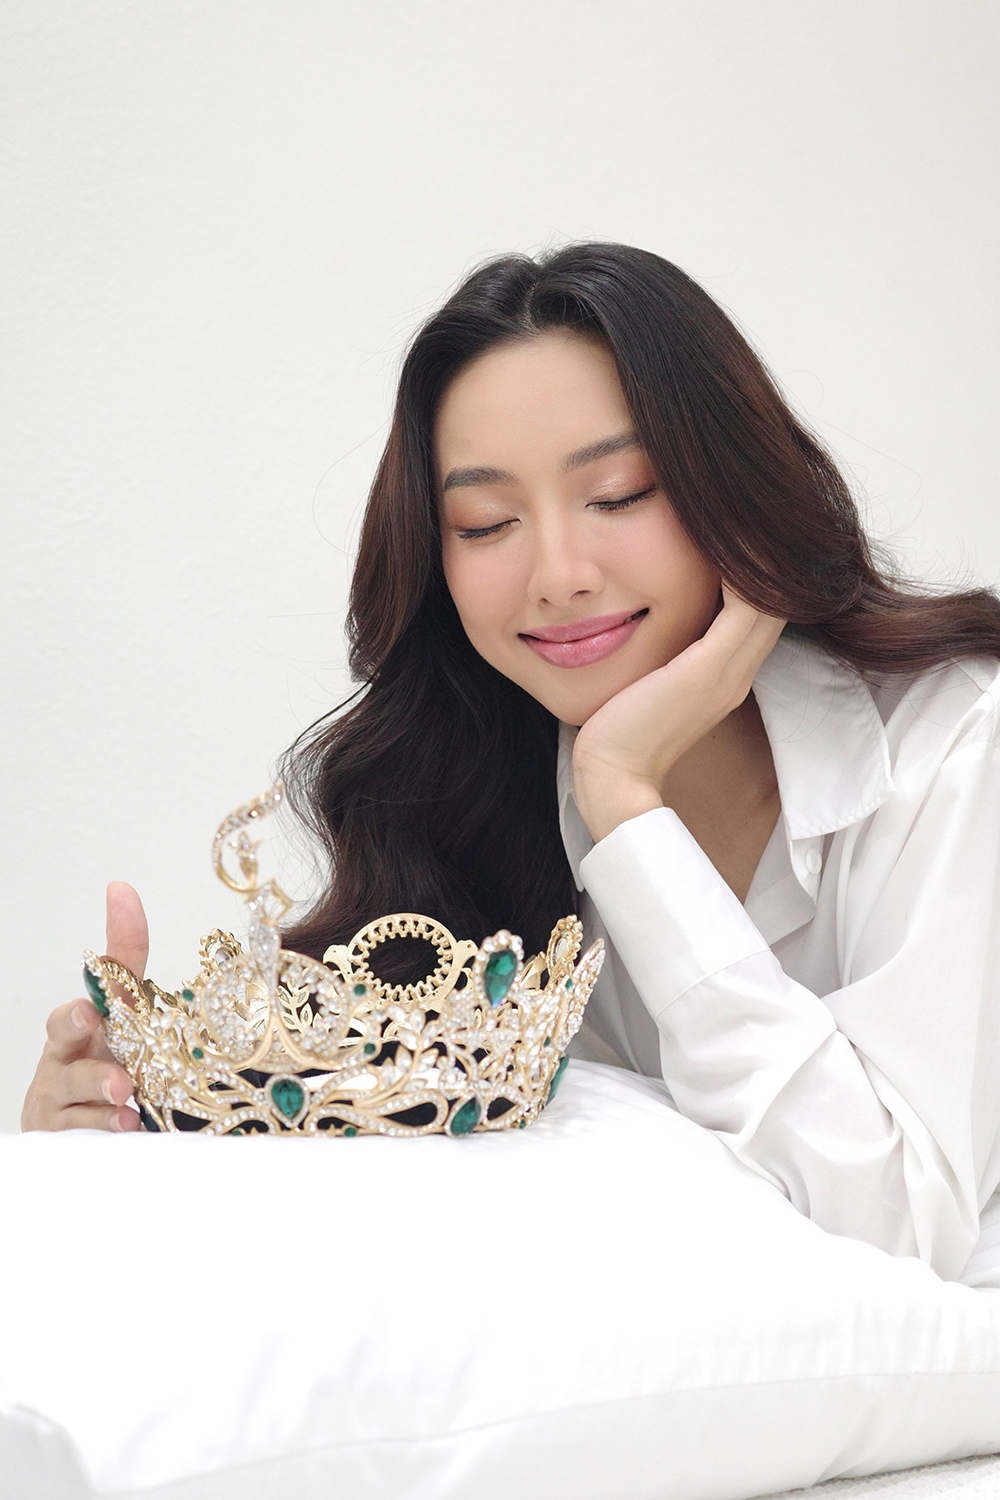 Hoa hậu Thùy Tiên đẹp dịu dàng trong bộ ảnh kỷ niệm 2 năm đăng quang - Ảnh 4.